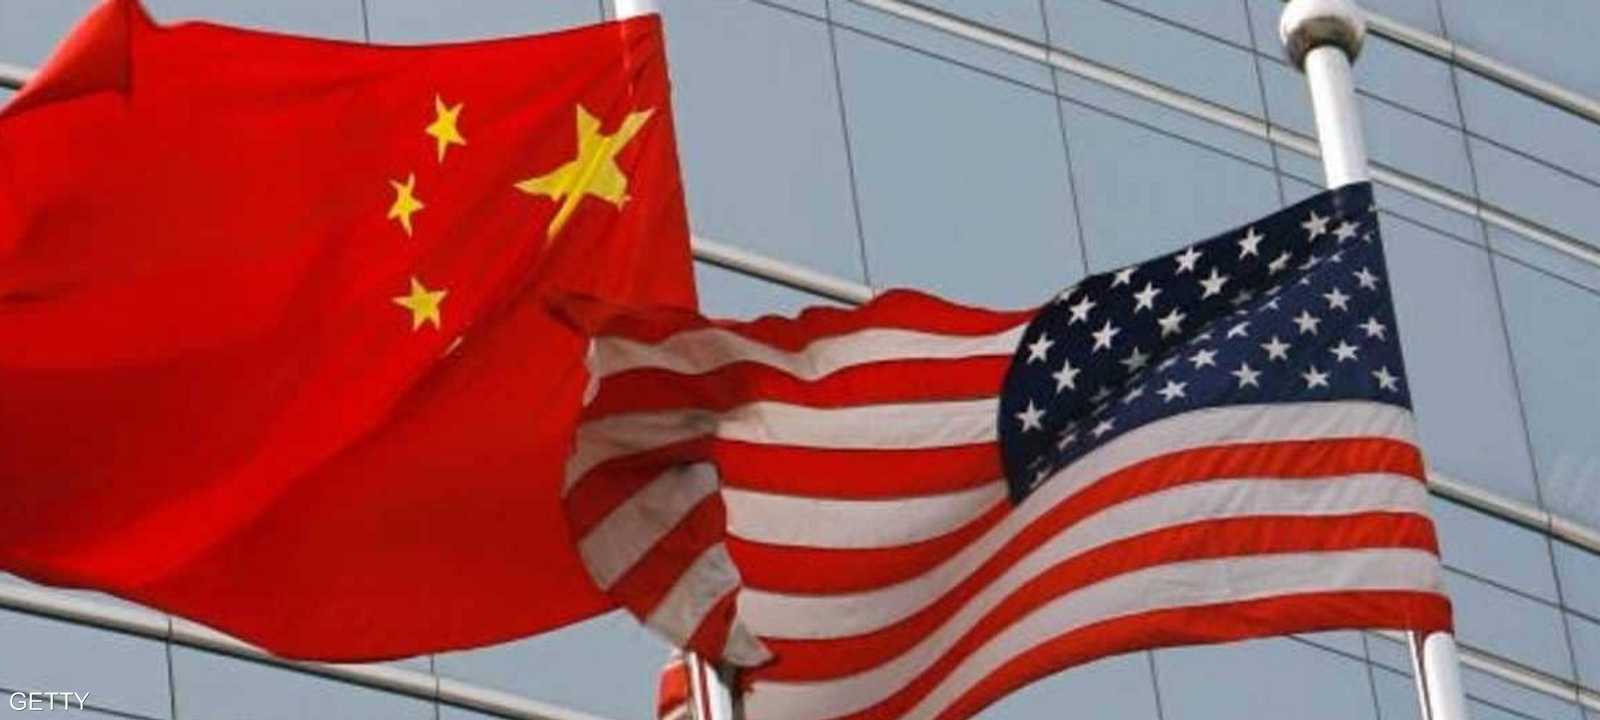 الصين: العلاقات مع واشنطن "تأثرت وتضررت بشكل خطير"